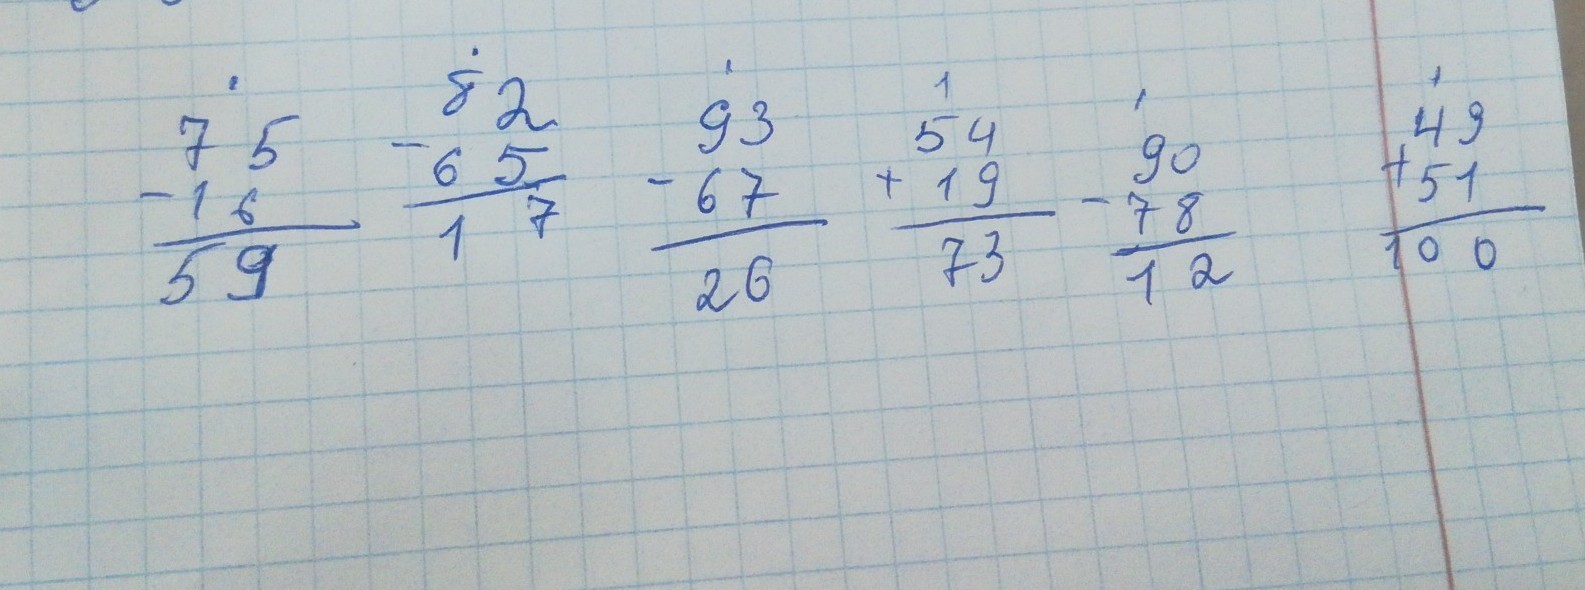 Решить пример 51 3 4. 82-65 Столбиком. Решение записываем в столбик. Вычисли столбиком. Вычисли записывая решение столбиком.